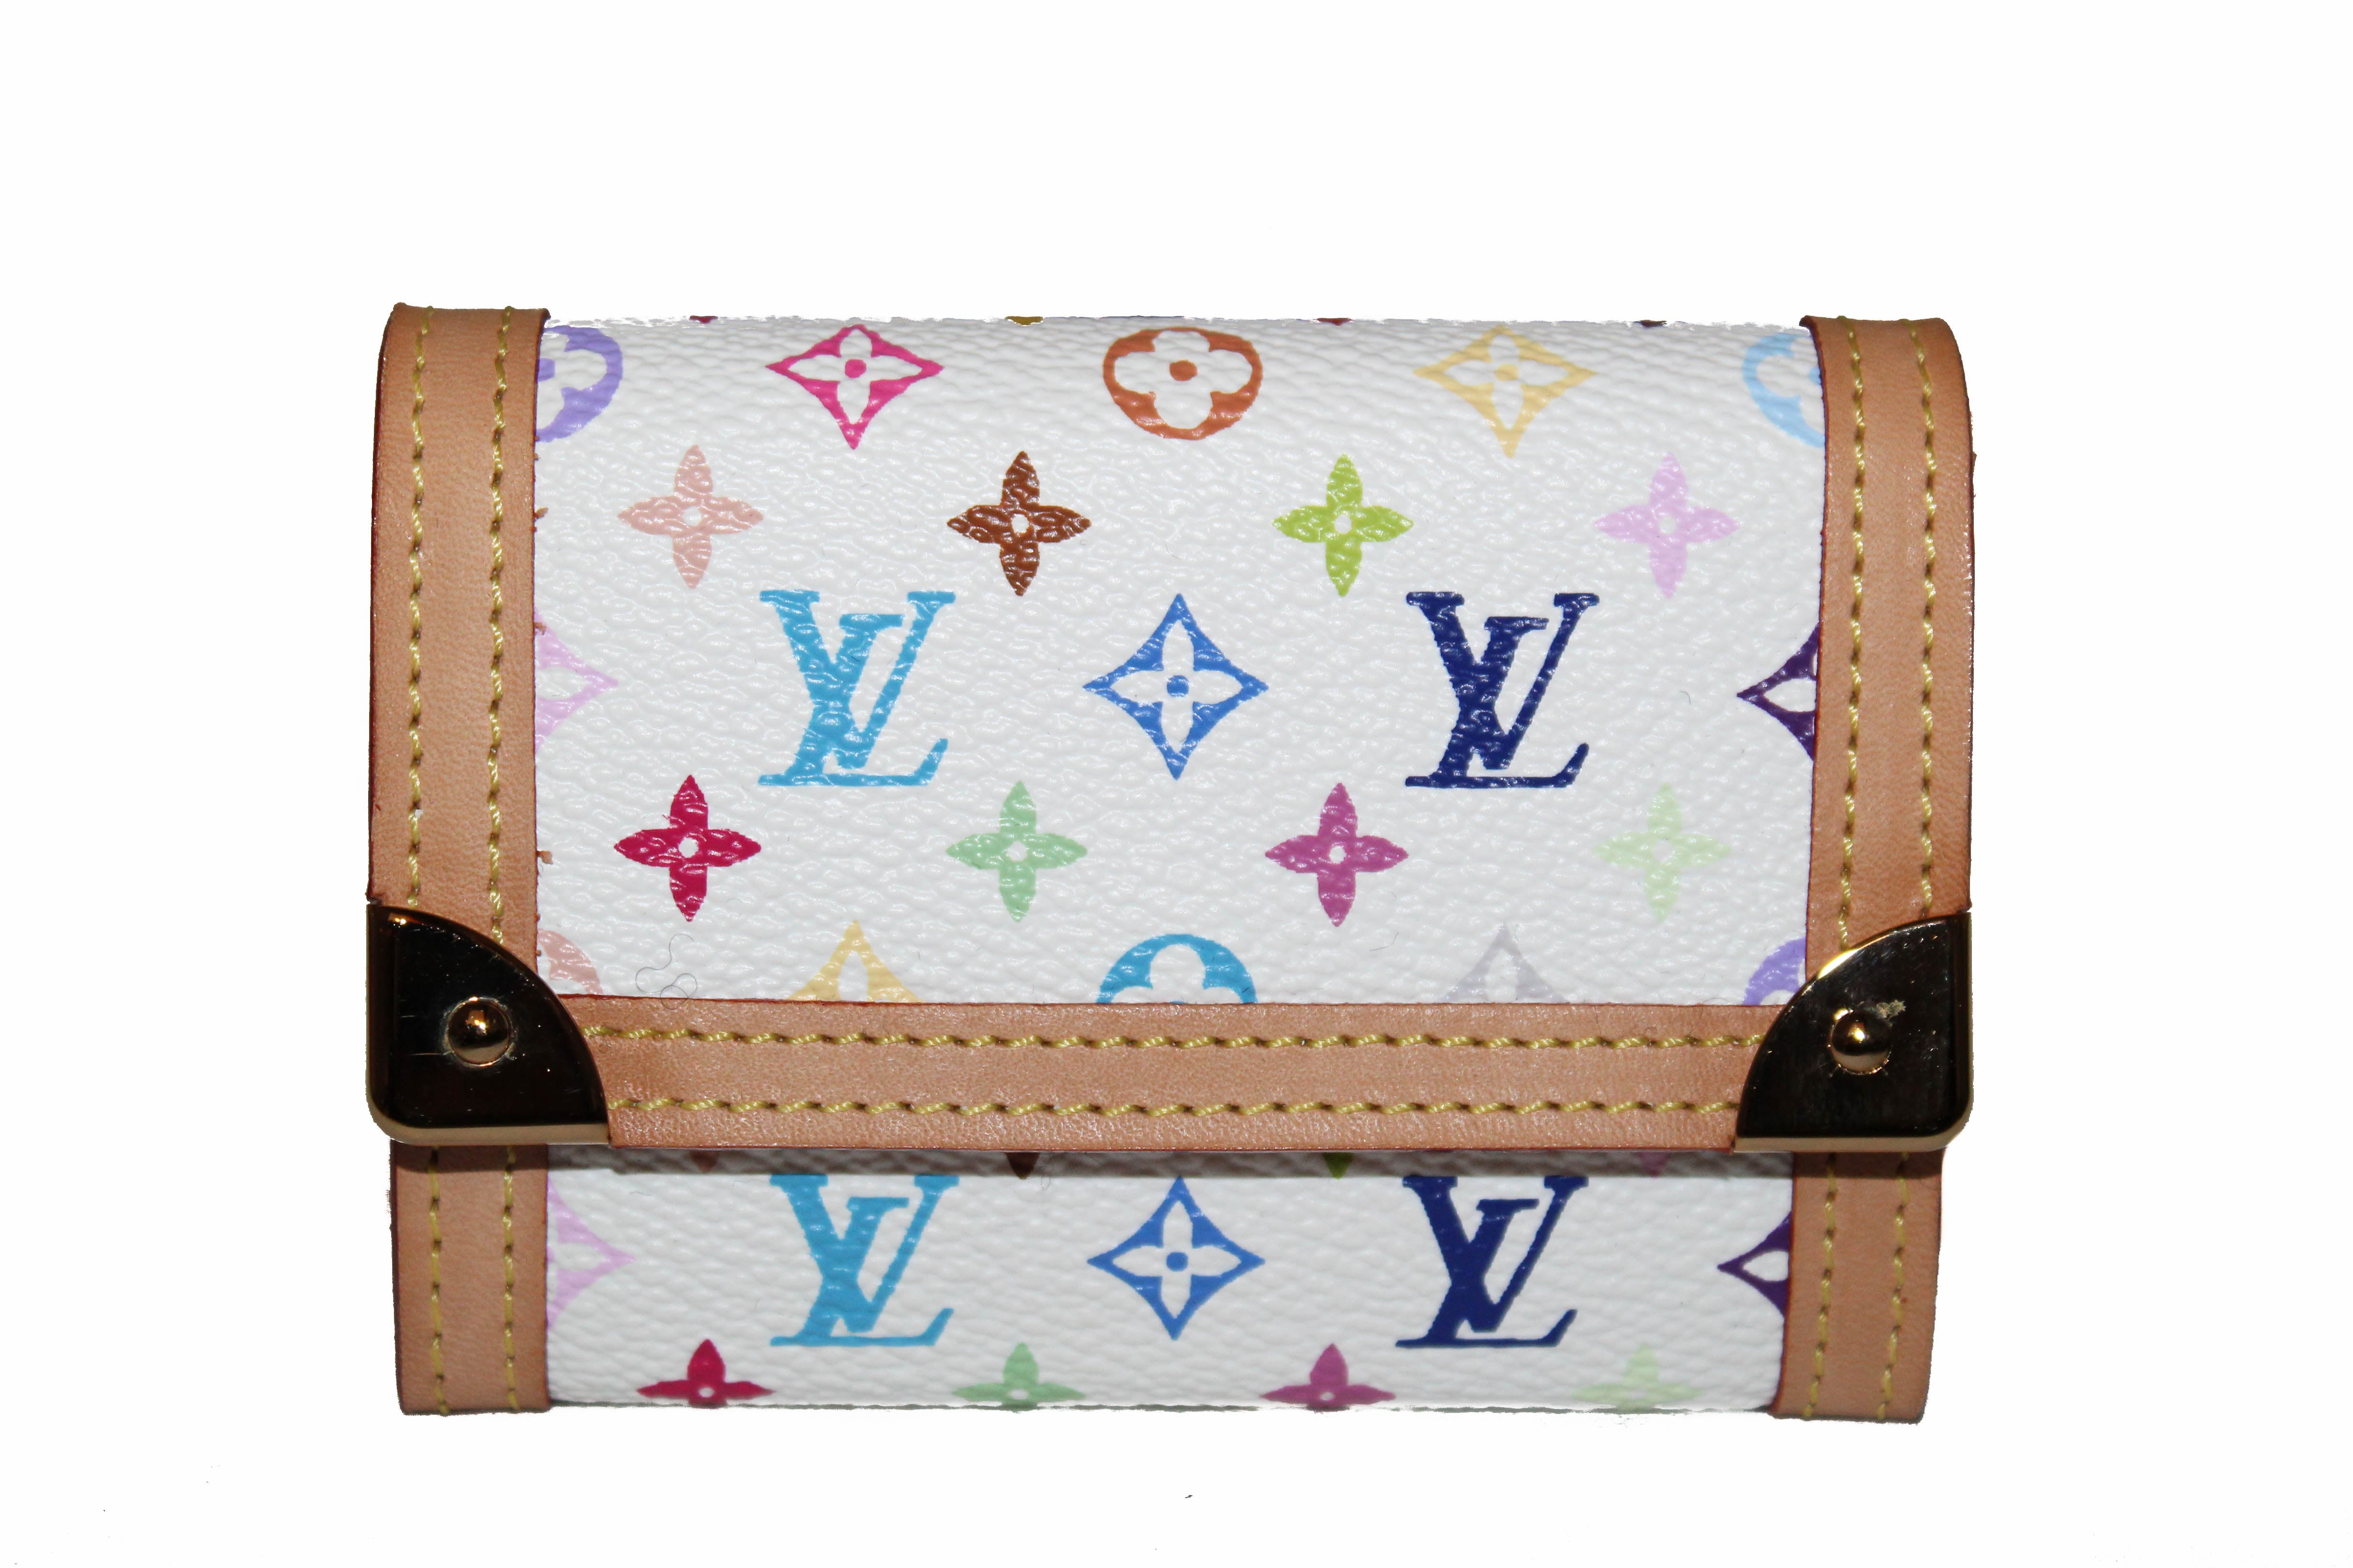 Does Louis Vuitton Bag Have Authenticity Card